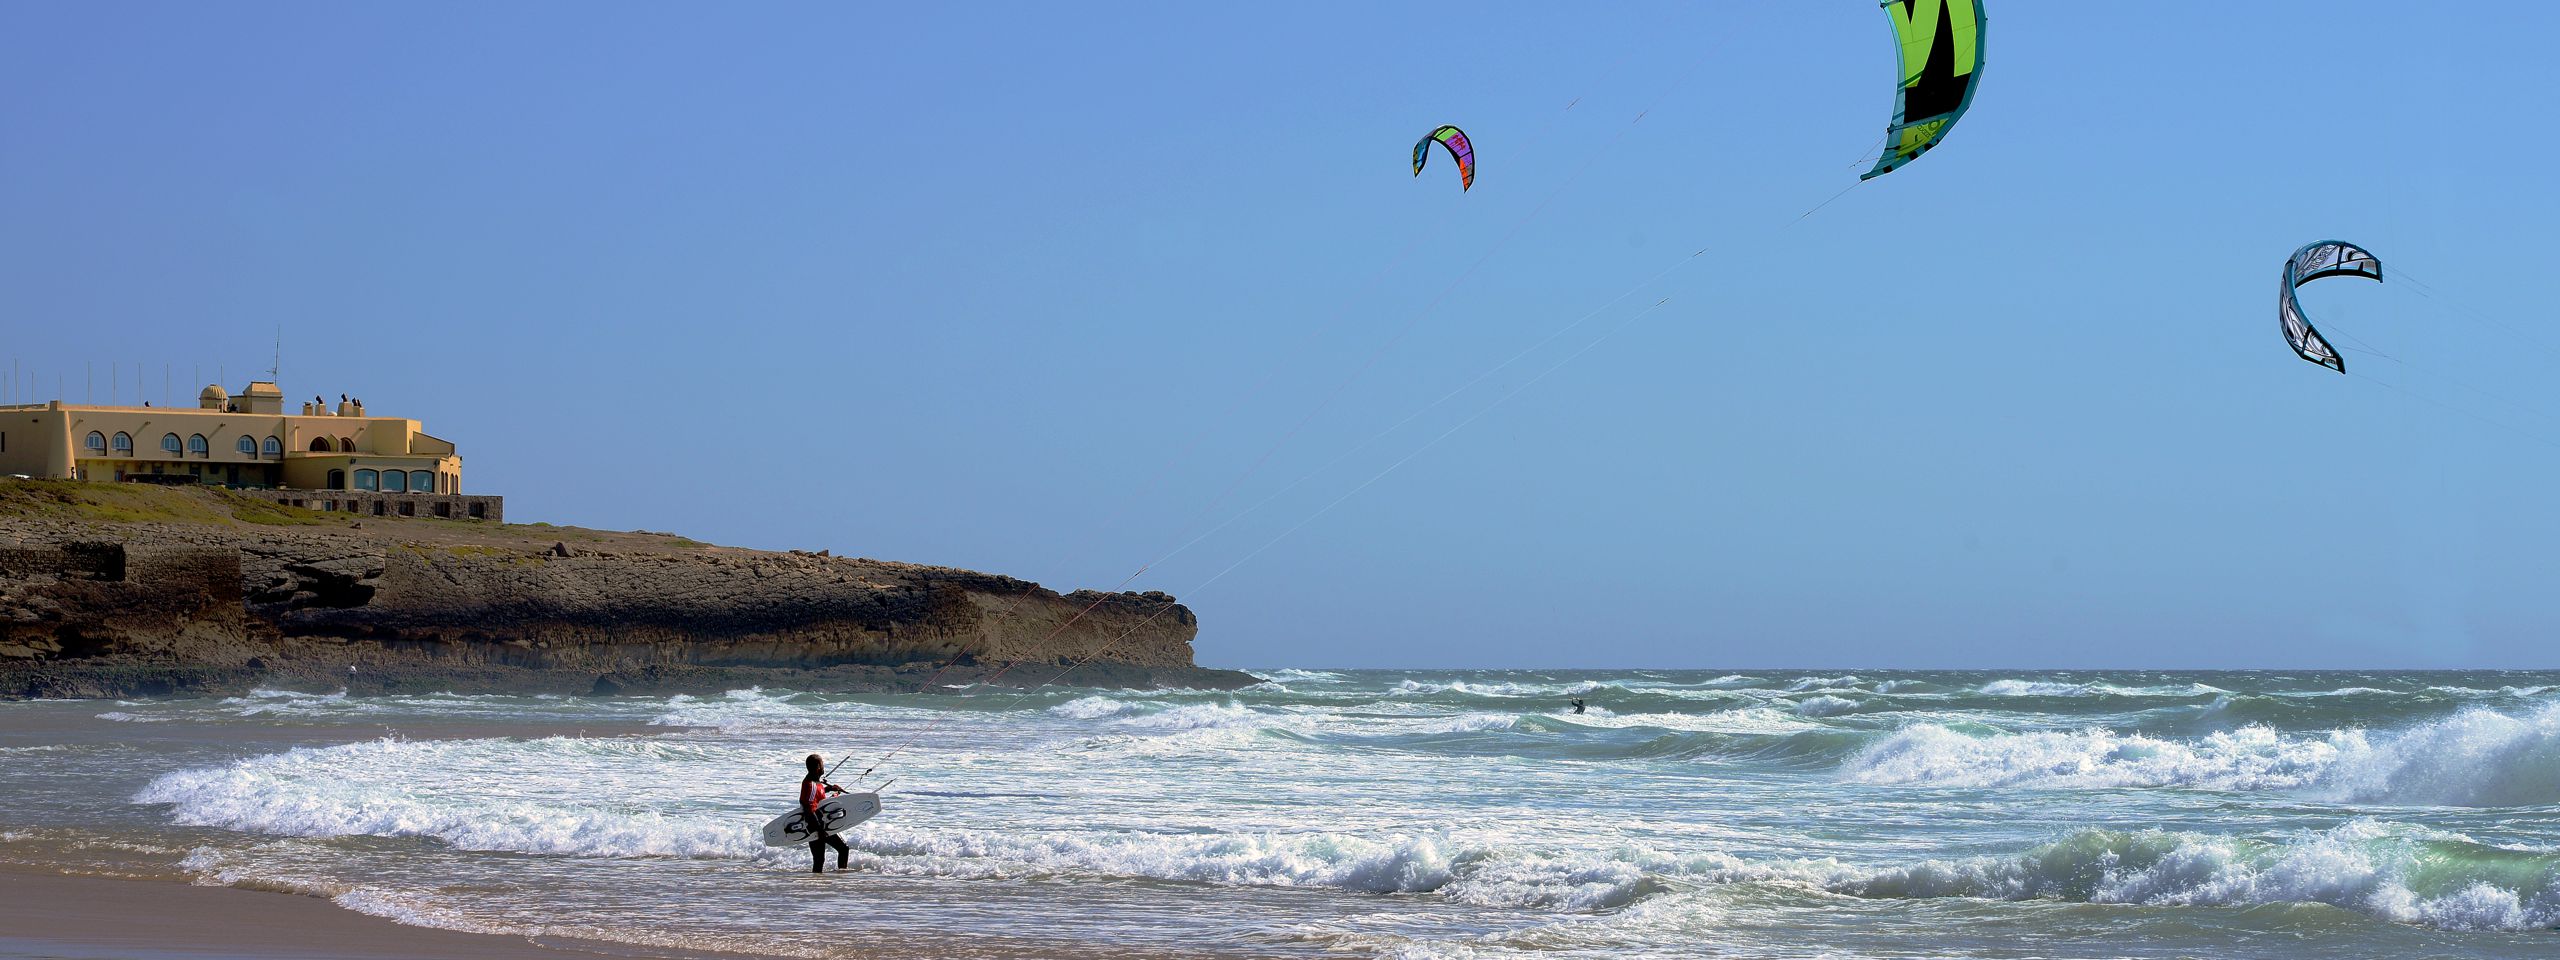 Kite surf at Guincho Beach in Cascais, Portugal